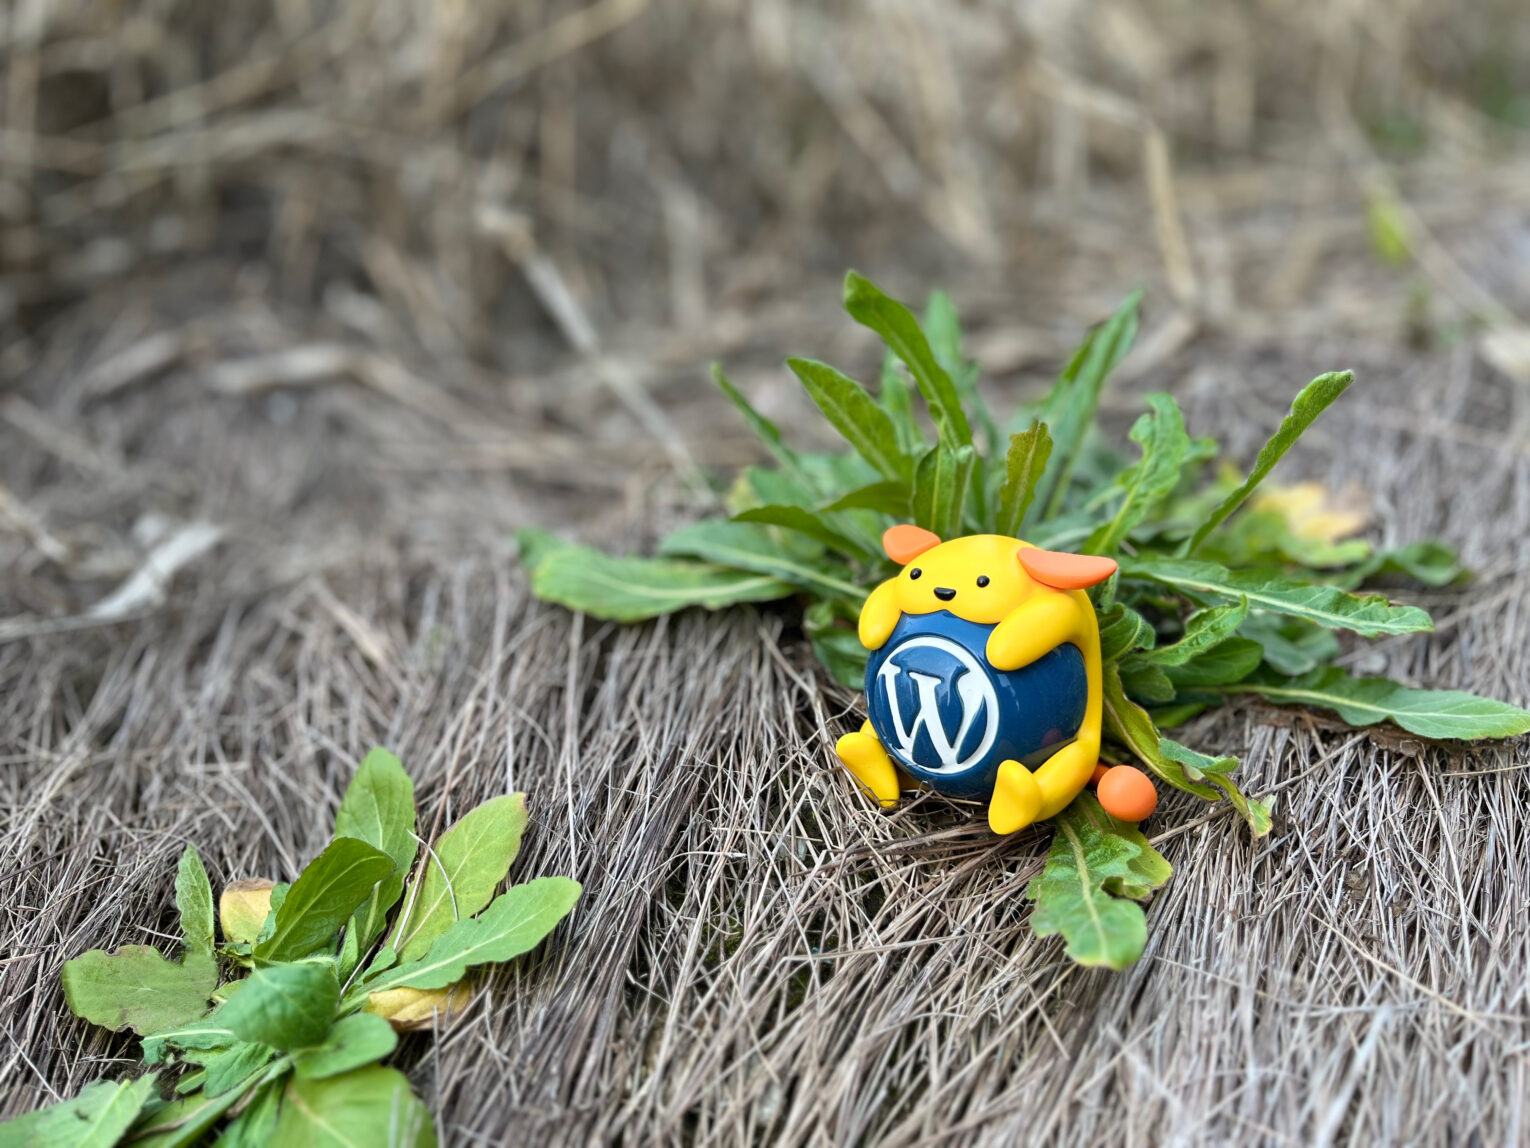 为 WordPress 生态添加色彩，Wapuu 高清 4K 壁纸开放共享。